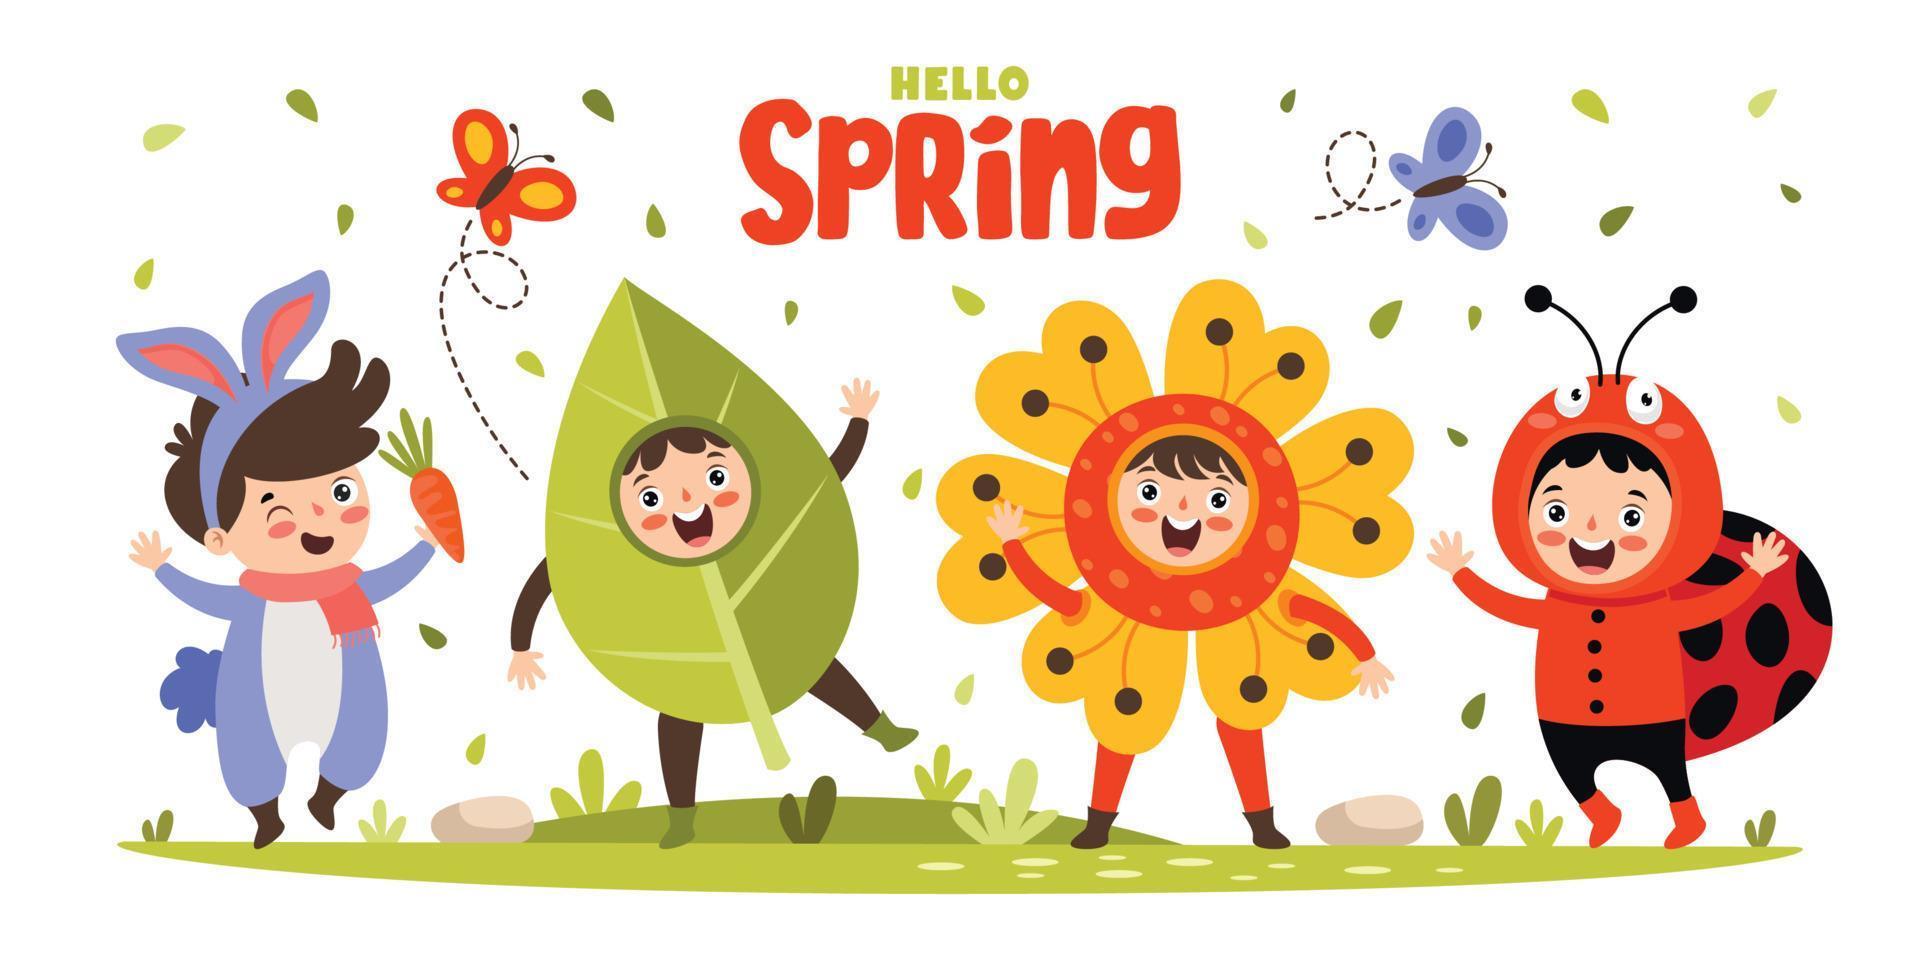 temporada de primavera com crianças de desenhos animados vetor